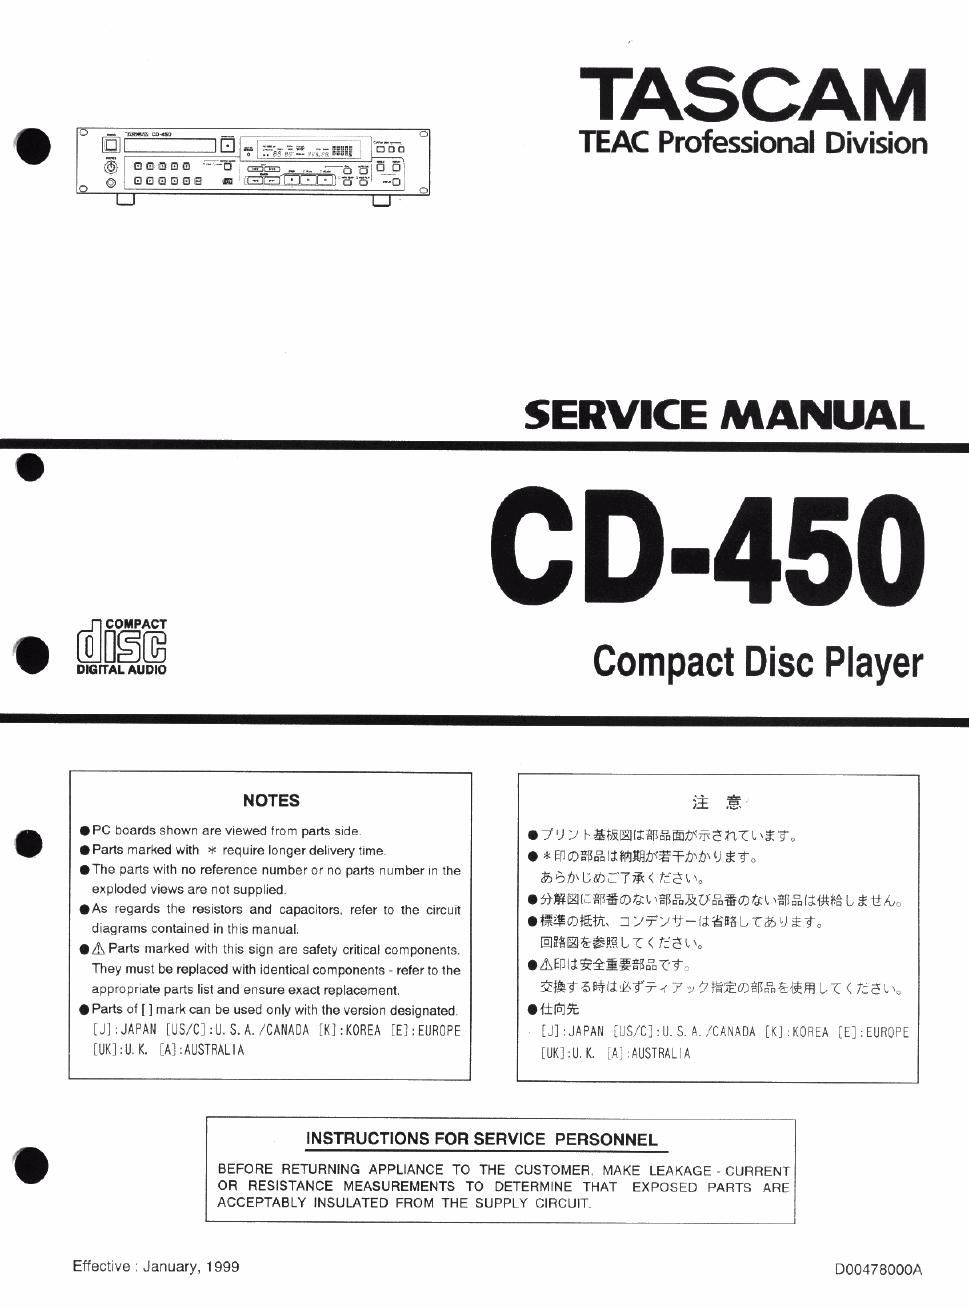 tascam cd 450 service manual